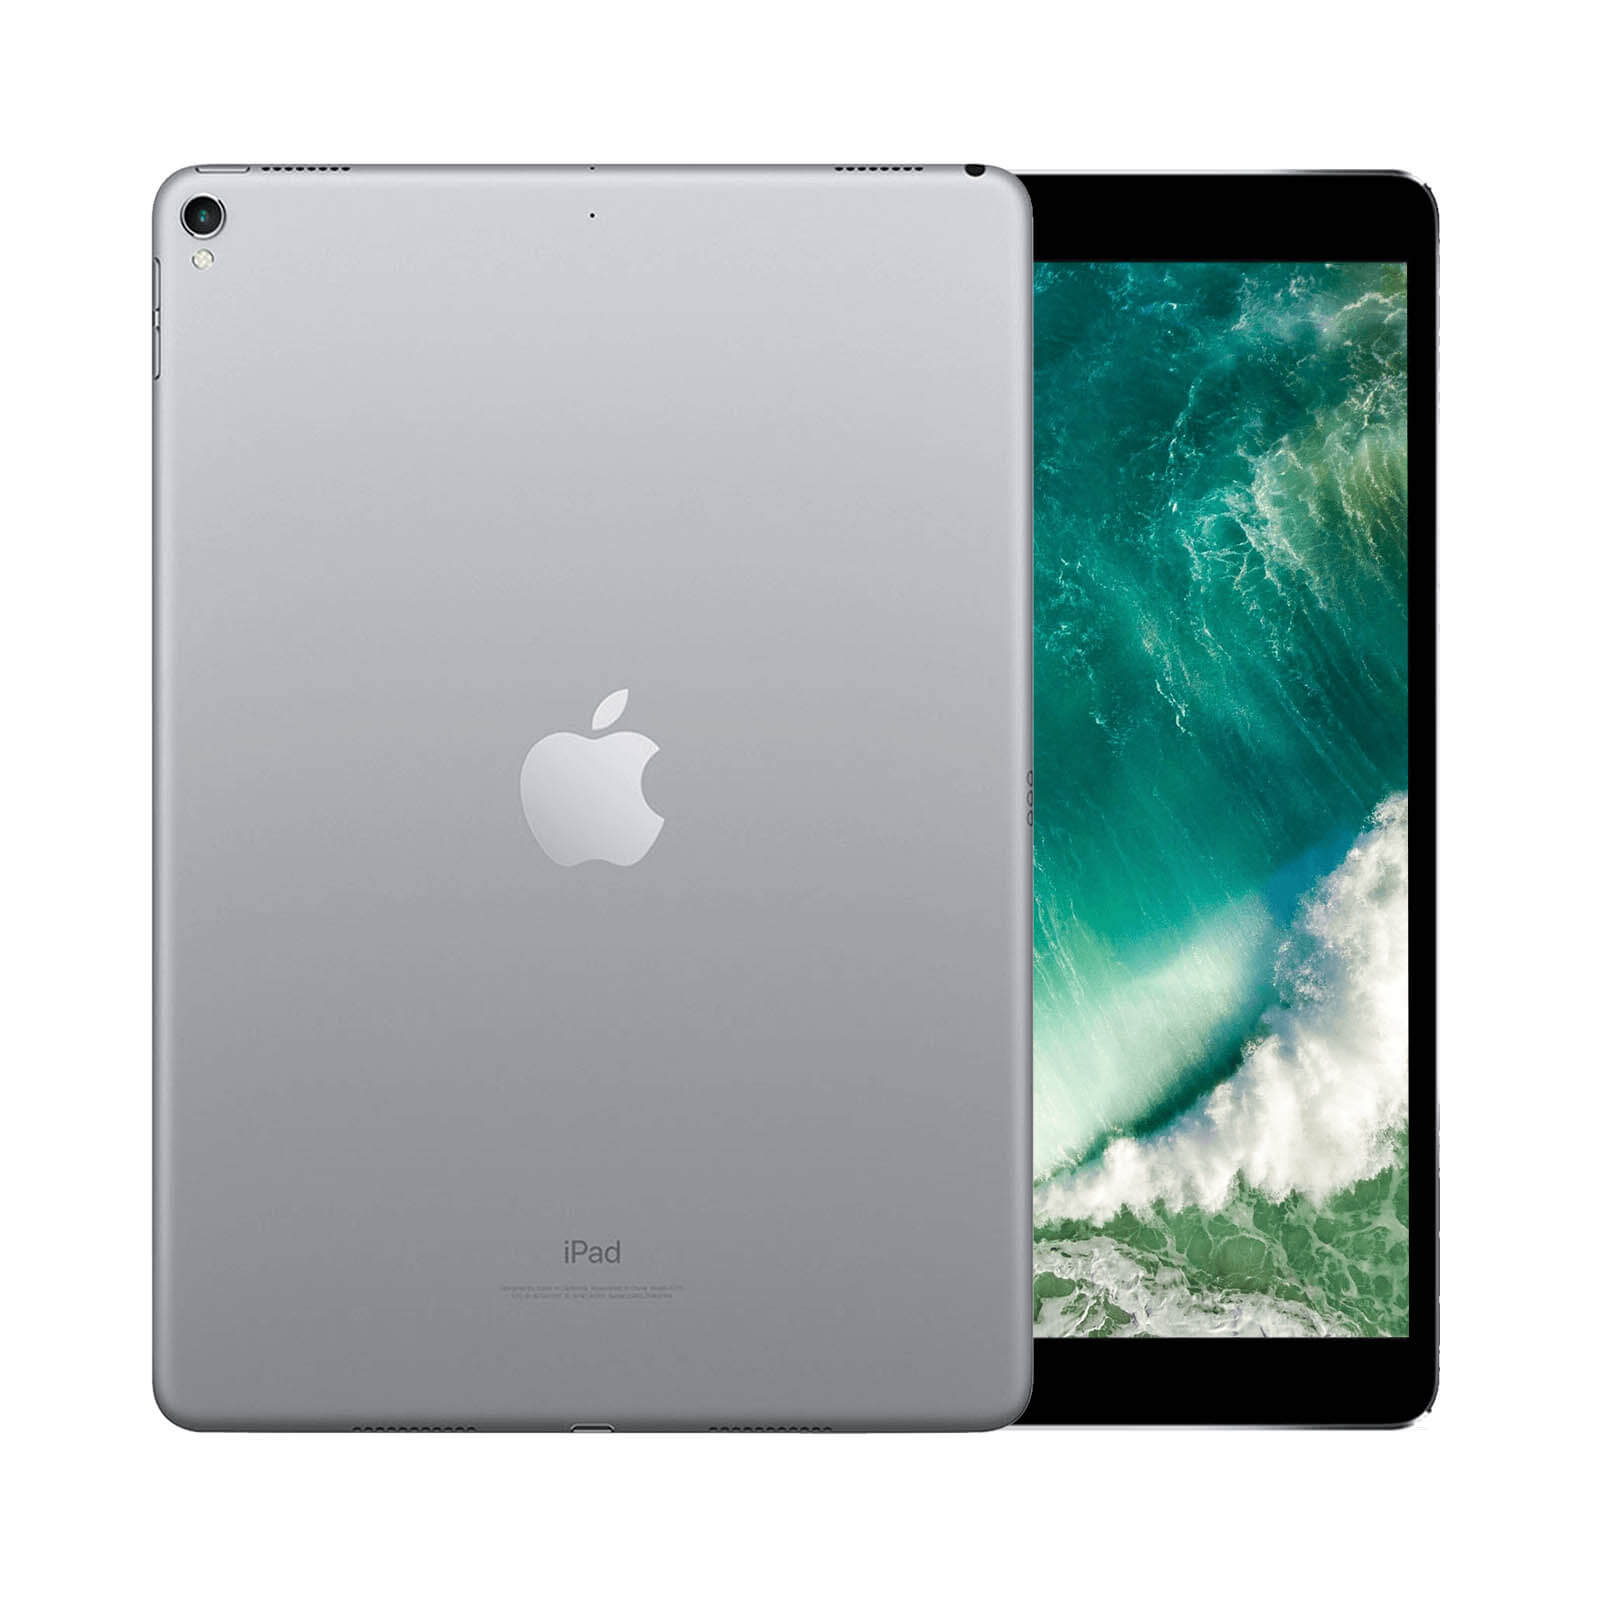 iPad Pro 10.5 Inch 256GB Space Grey Good - WiFi